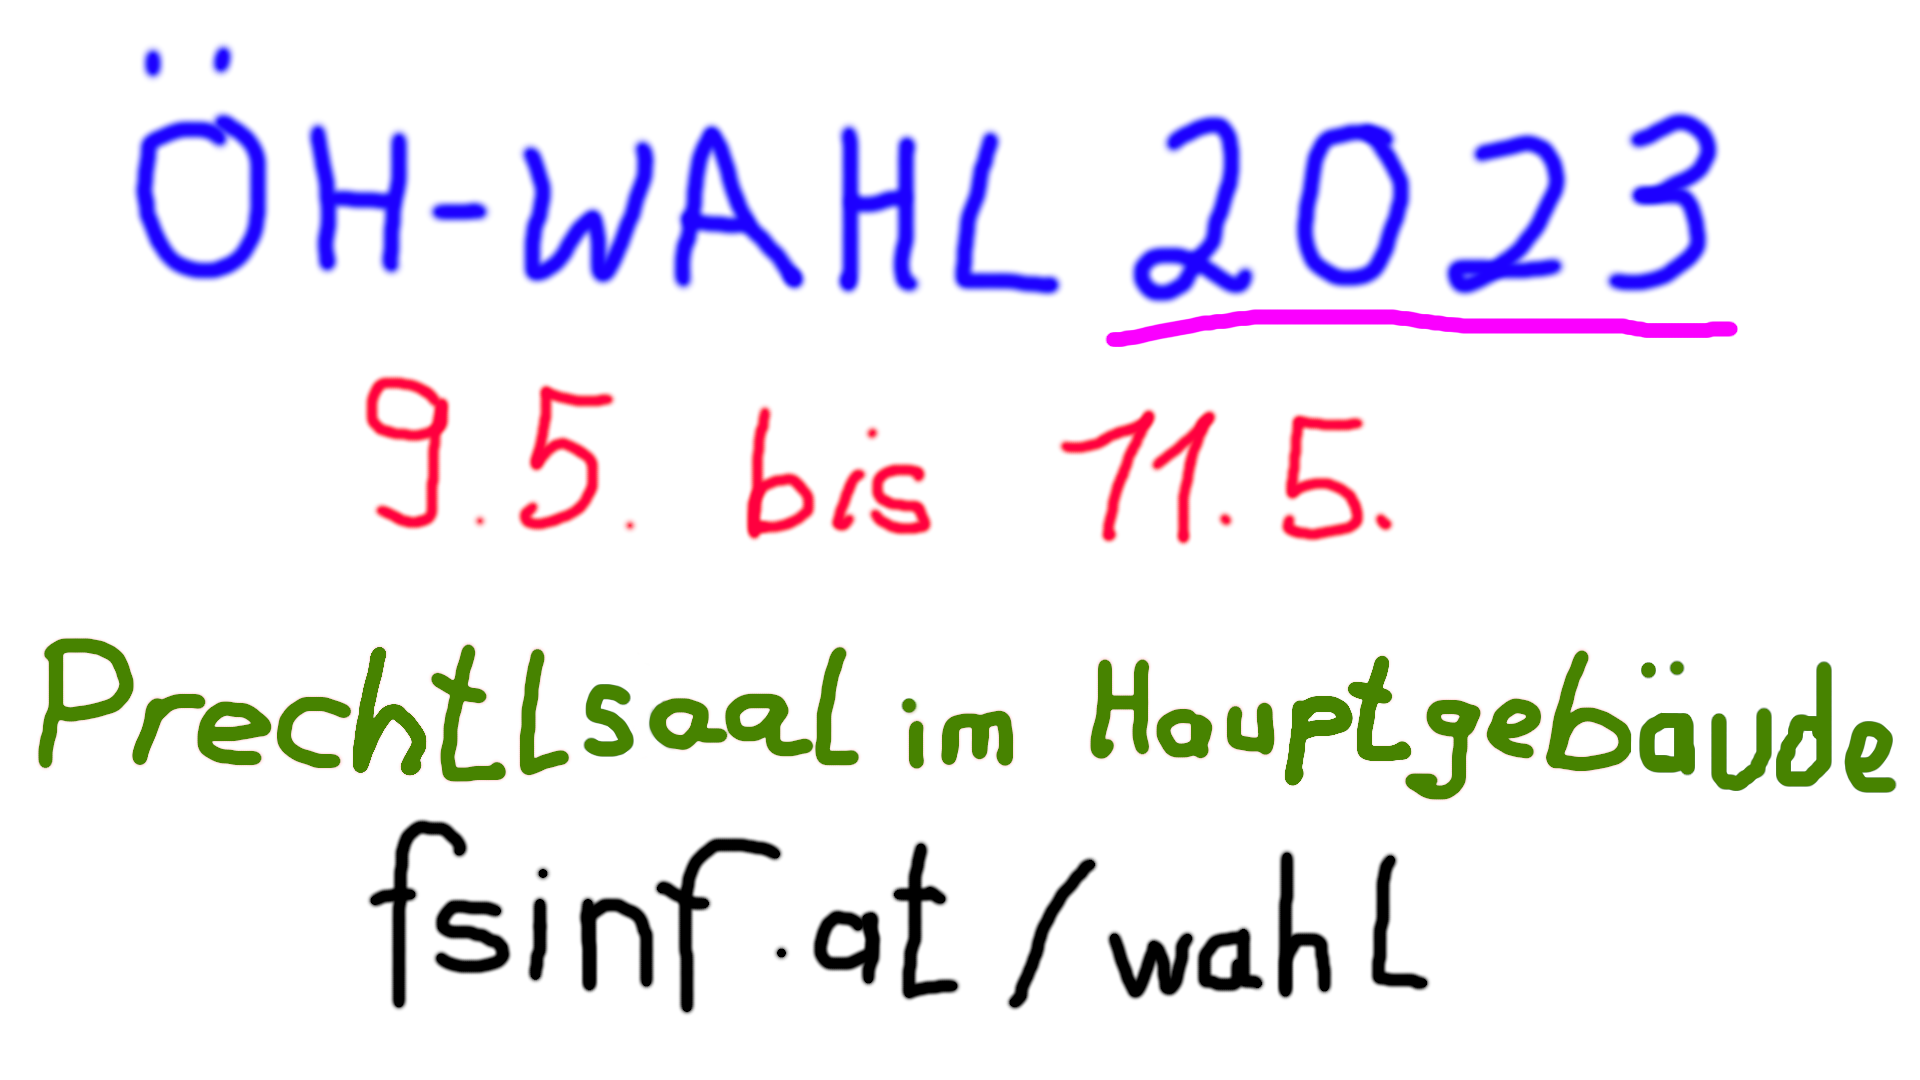 Wahlwerbebanner by someone und seinen epischen GIMP-Skills. Inhalt: "ÖH-Wahl 2023", darunter "9.5. bis 11.5.", "Prechtlsaal im Hauptgebäude" und "fsinf.at/wahl"